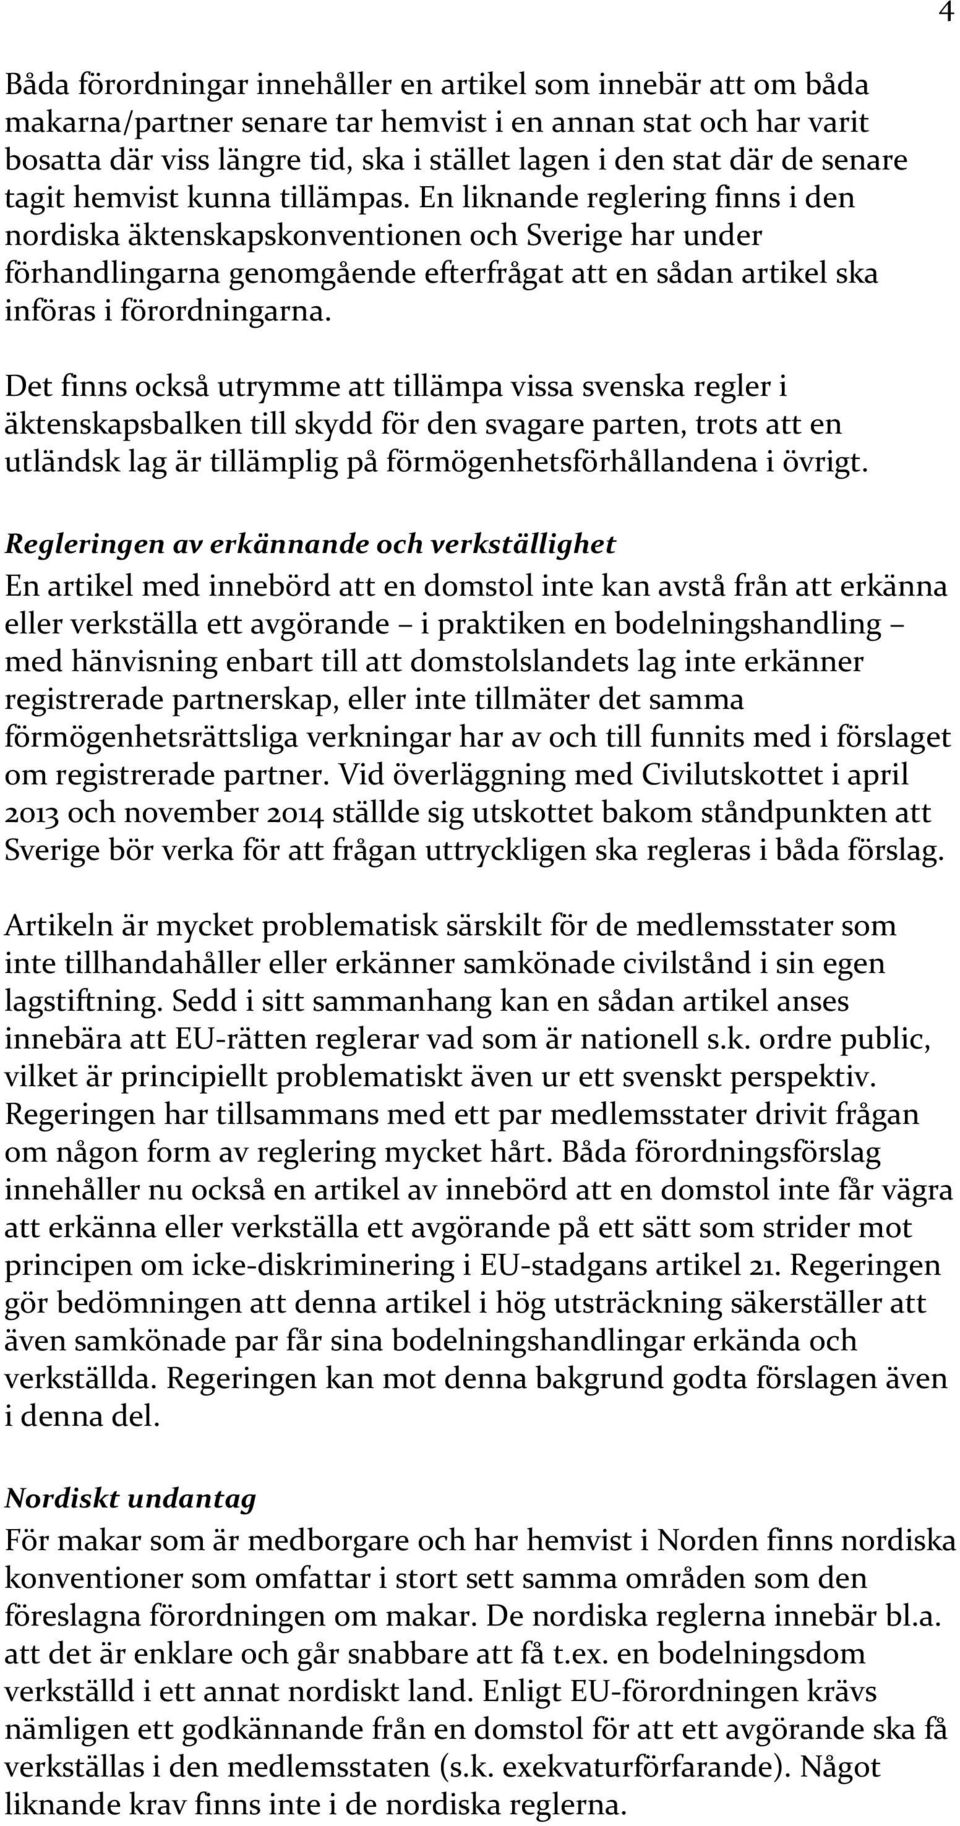 En liknande reglering finns i den nordiska äktenskapskonventionen och Sverige har under förhandlingarna genomgående efterfrågat att en sådan artikel ska införas i förordningarna.